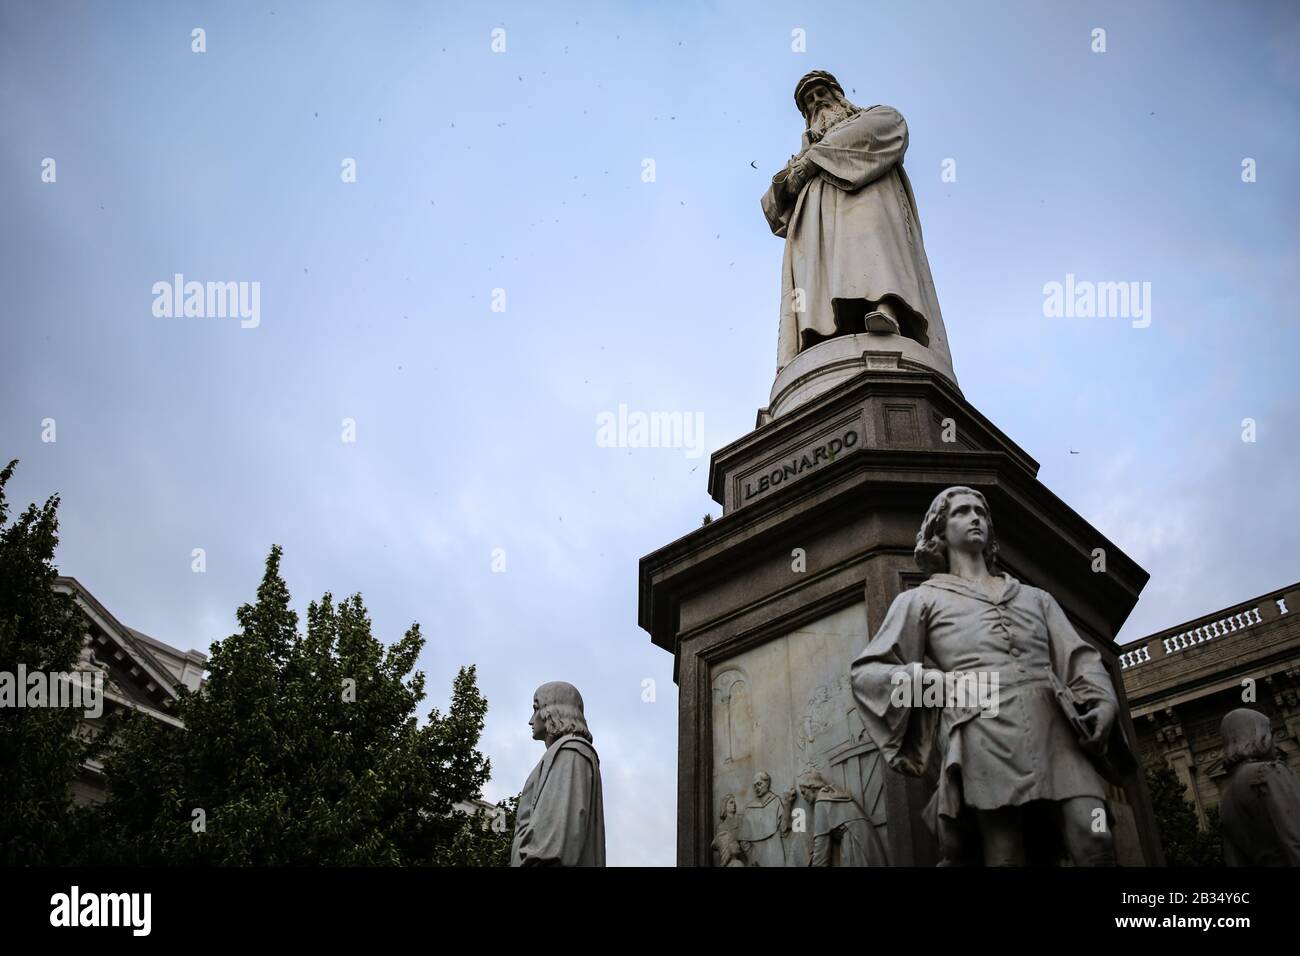 Statue of Leonardo da Vinci in Piazza della Scala, Milan Stock Photo